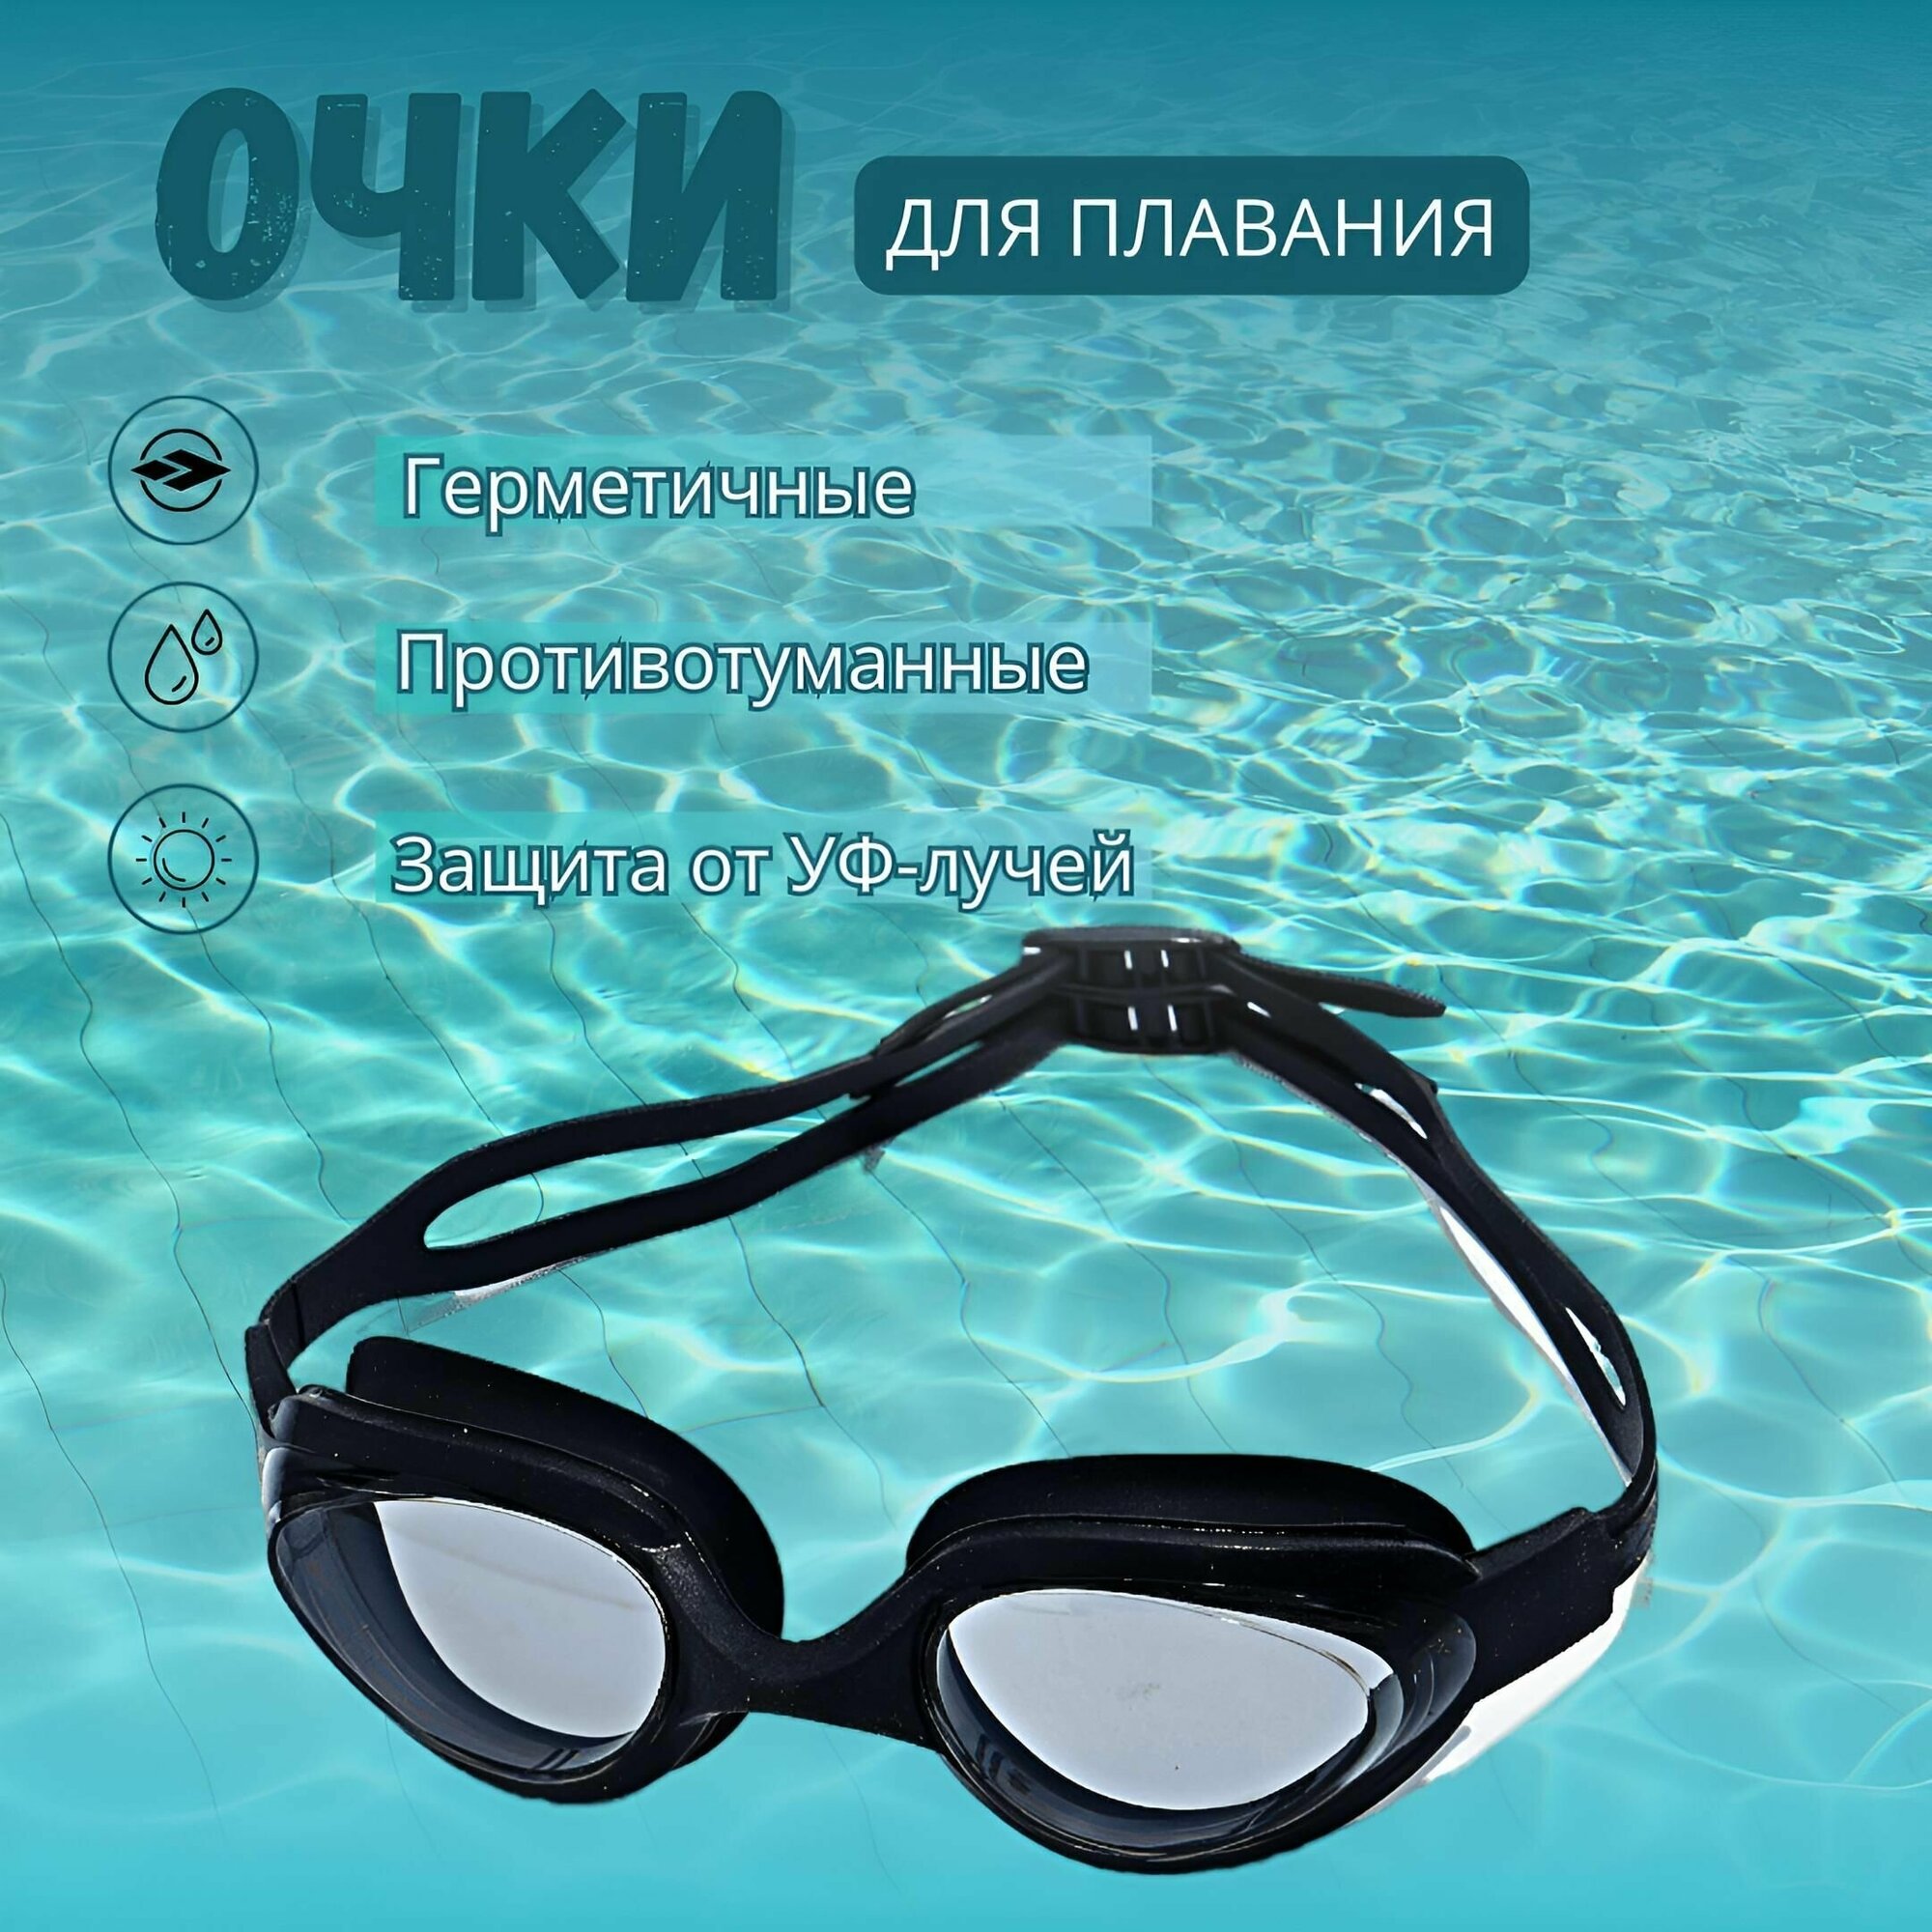 Очки для плавания профессиональные в чехле с берушами мужские, женские, подростковые